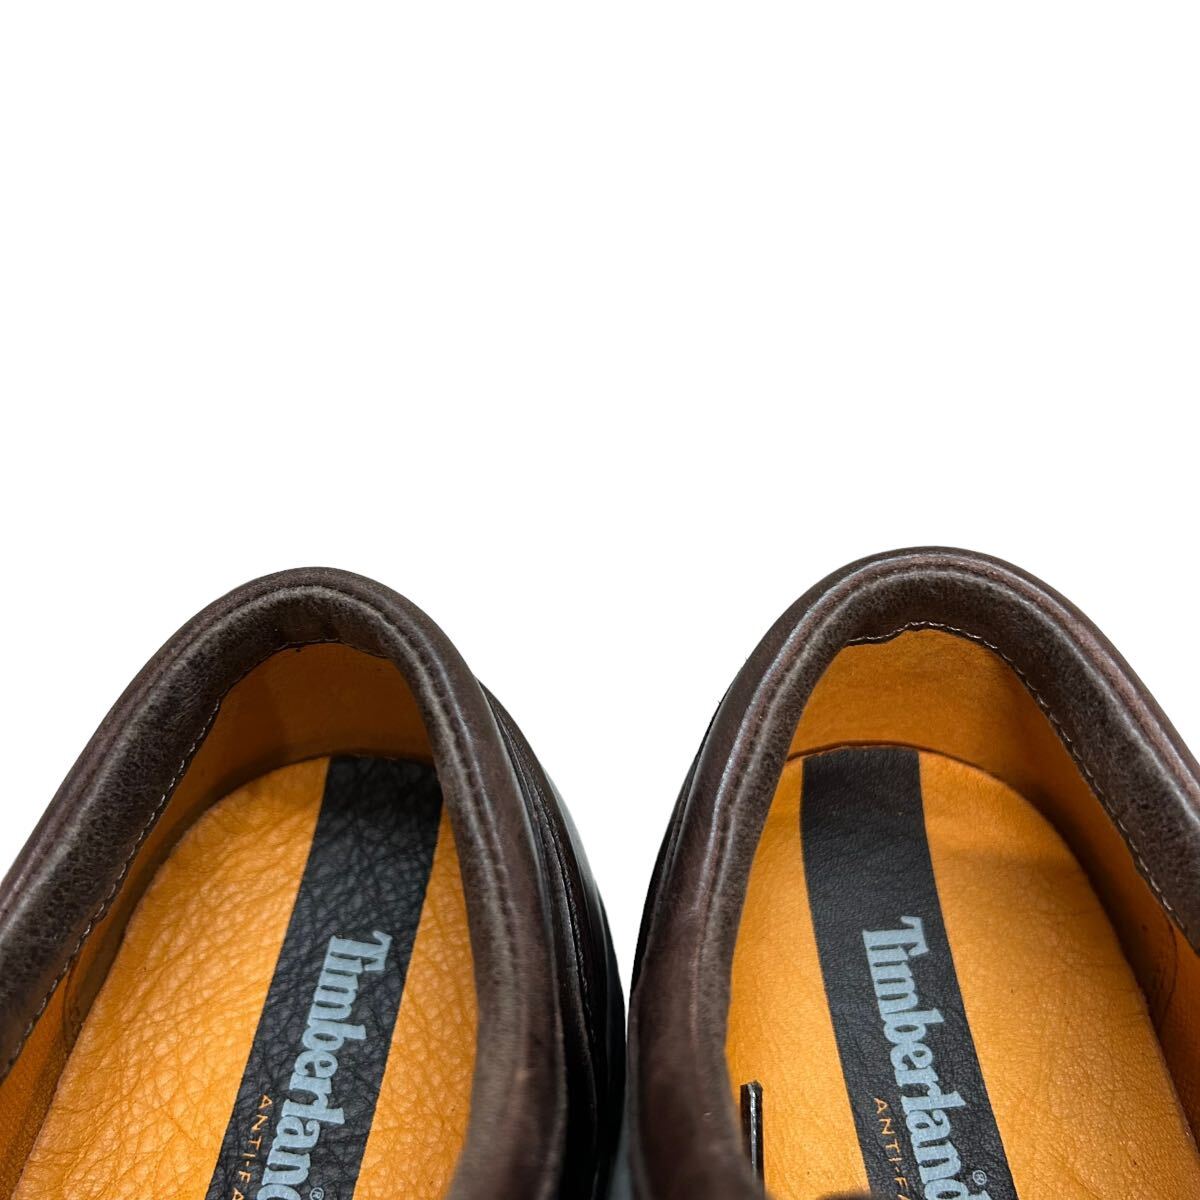 A072 Timberland Timberland мужской прогулочные туфли кожа обувь 7.5W примерно 25.5cm Brown натуральная кожа 